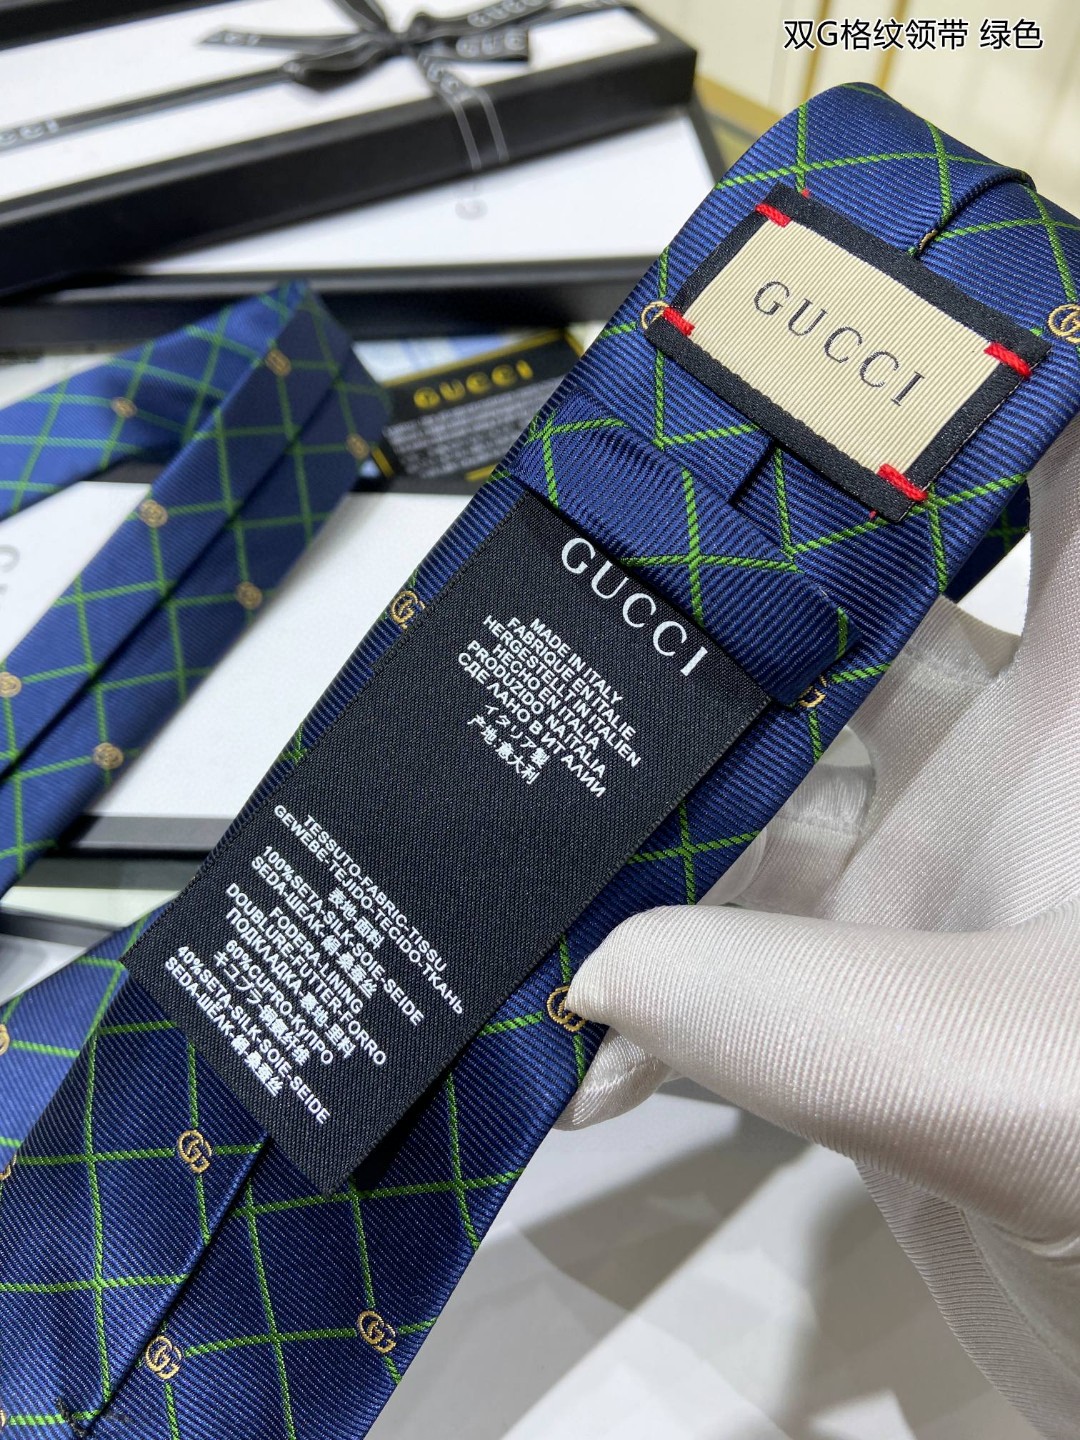 上新特价G家专柜新款男士领带双G格纹领带稀有采用经典小G搭配交叉线条格纹展现精湛手工与时尚优雅的理想选择